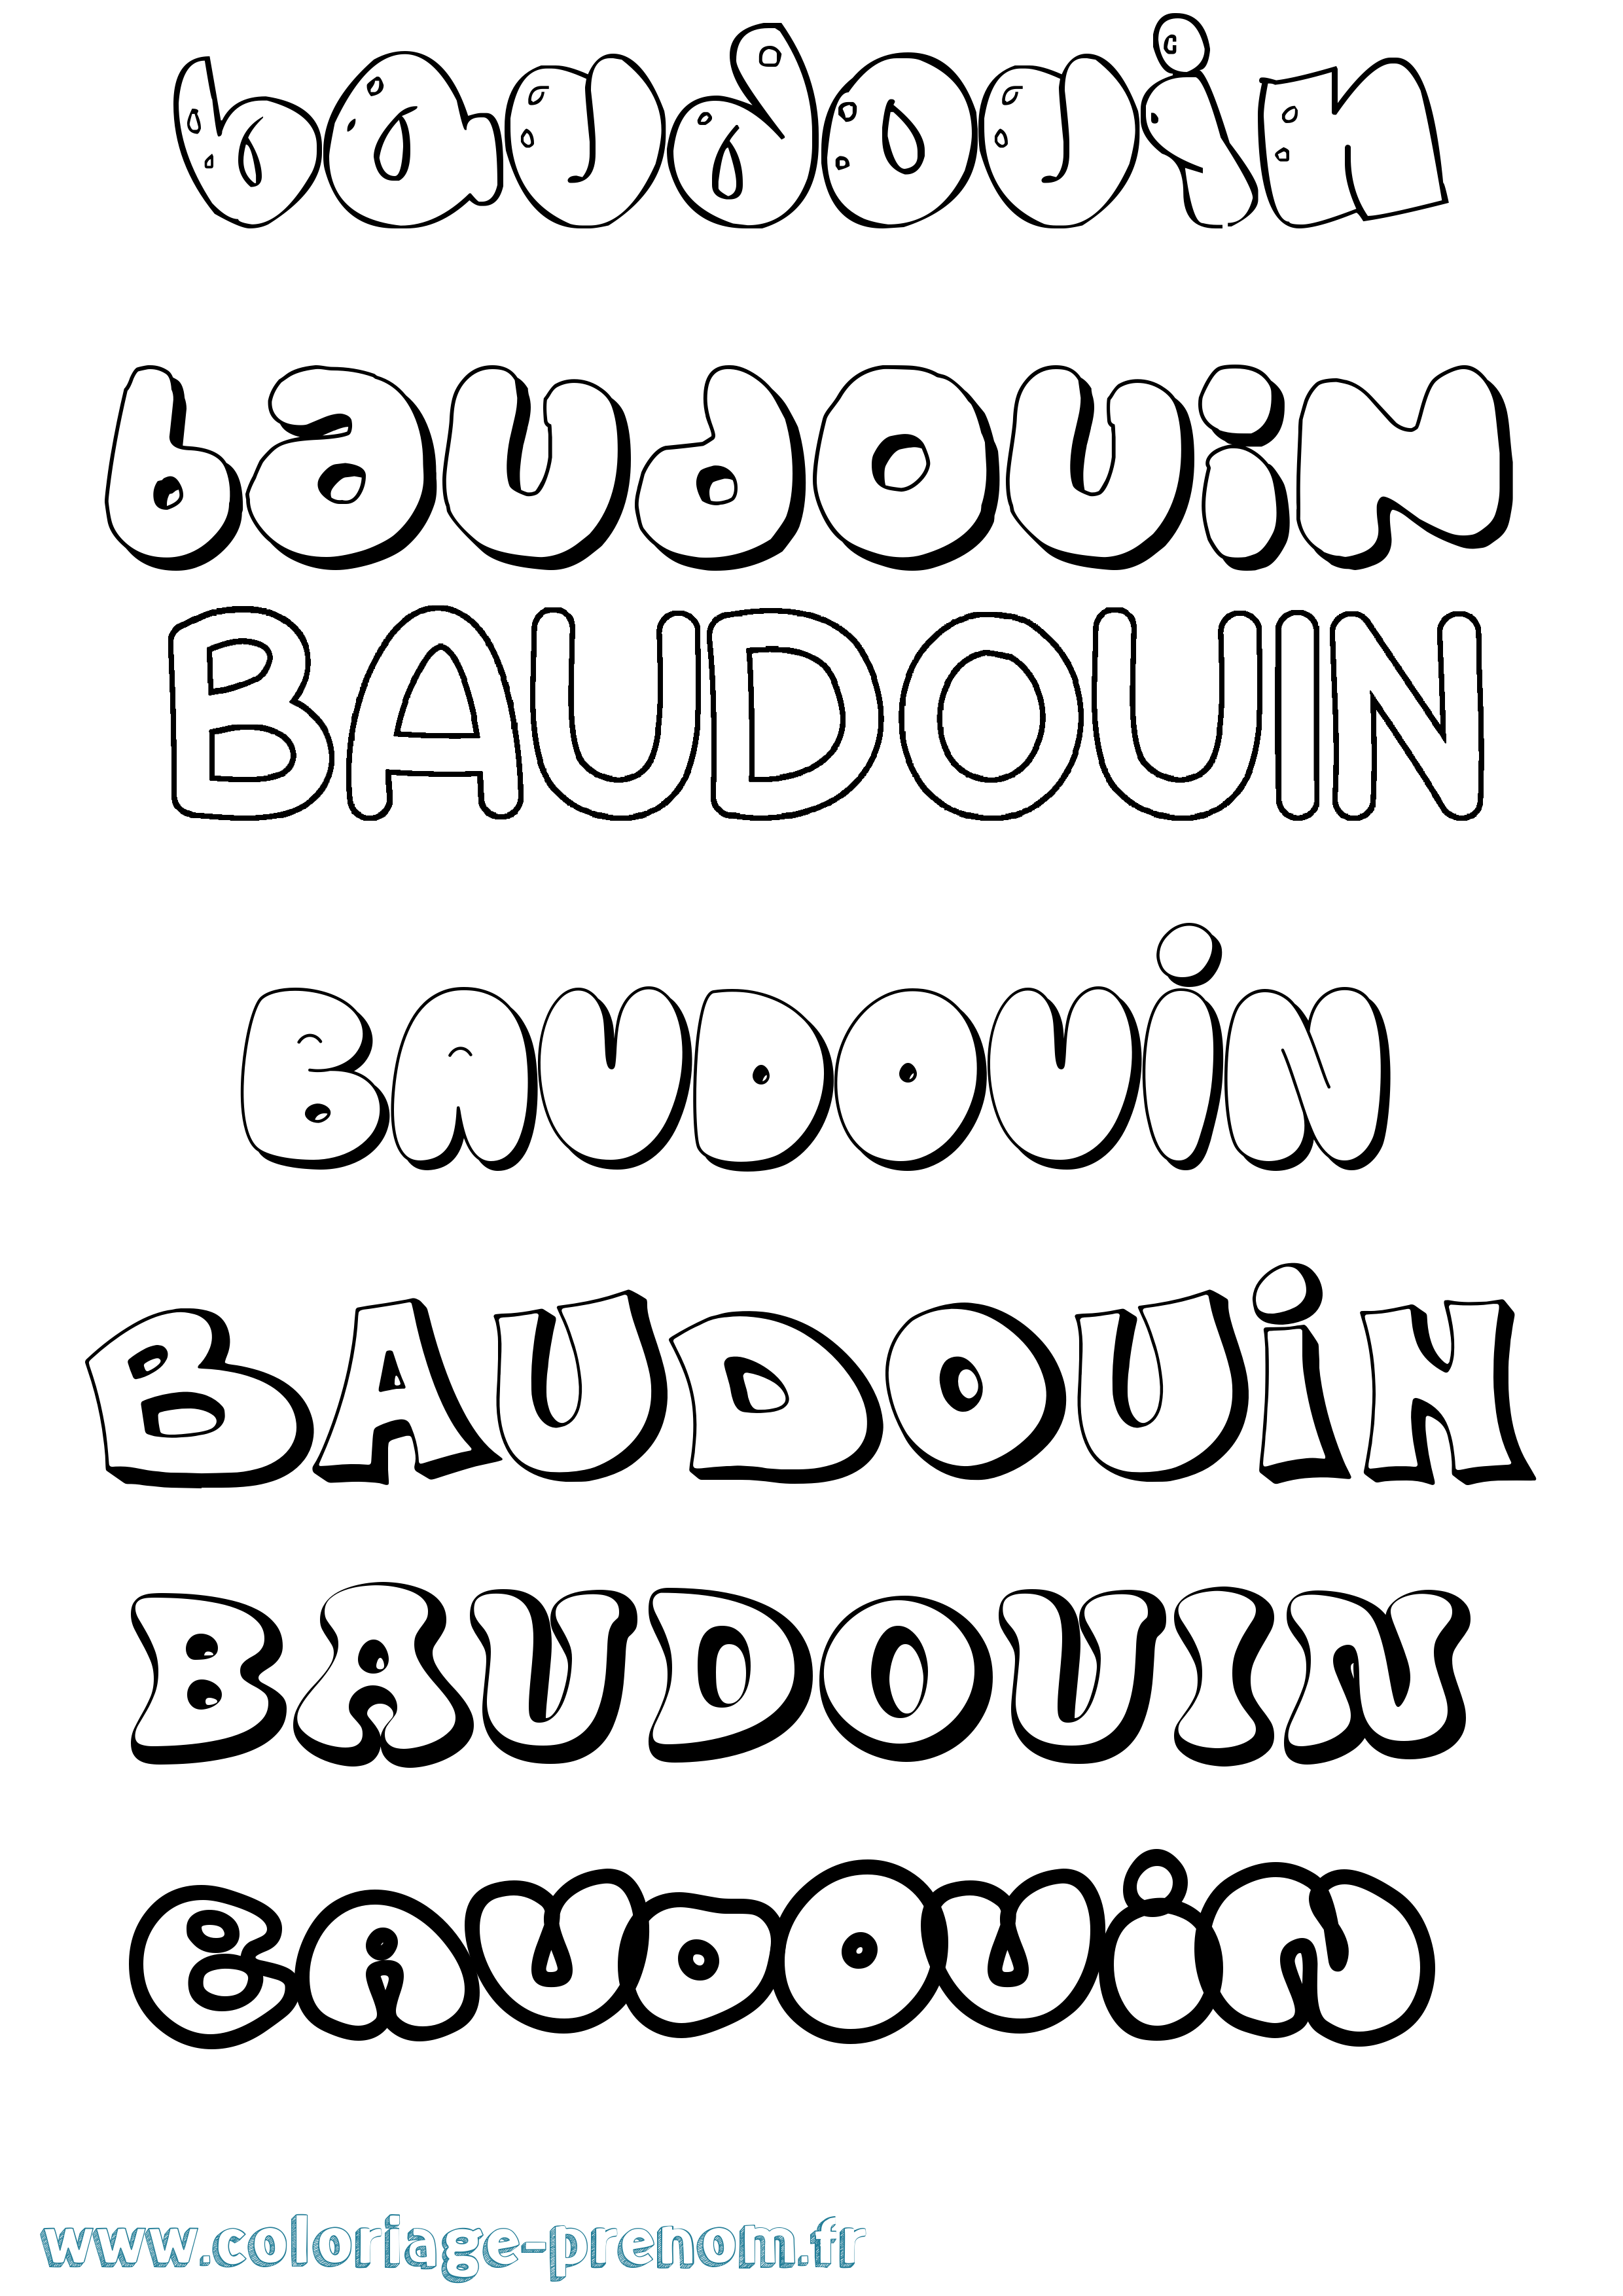 Coloriage prénom Baudouin Bubble